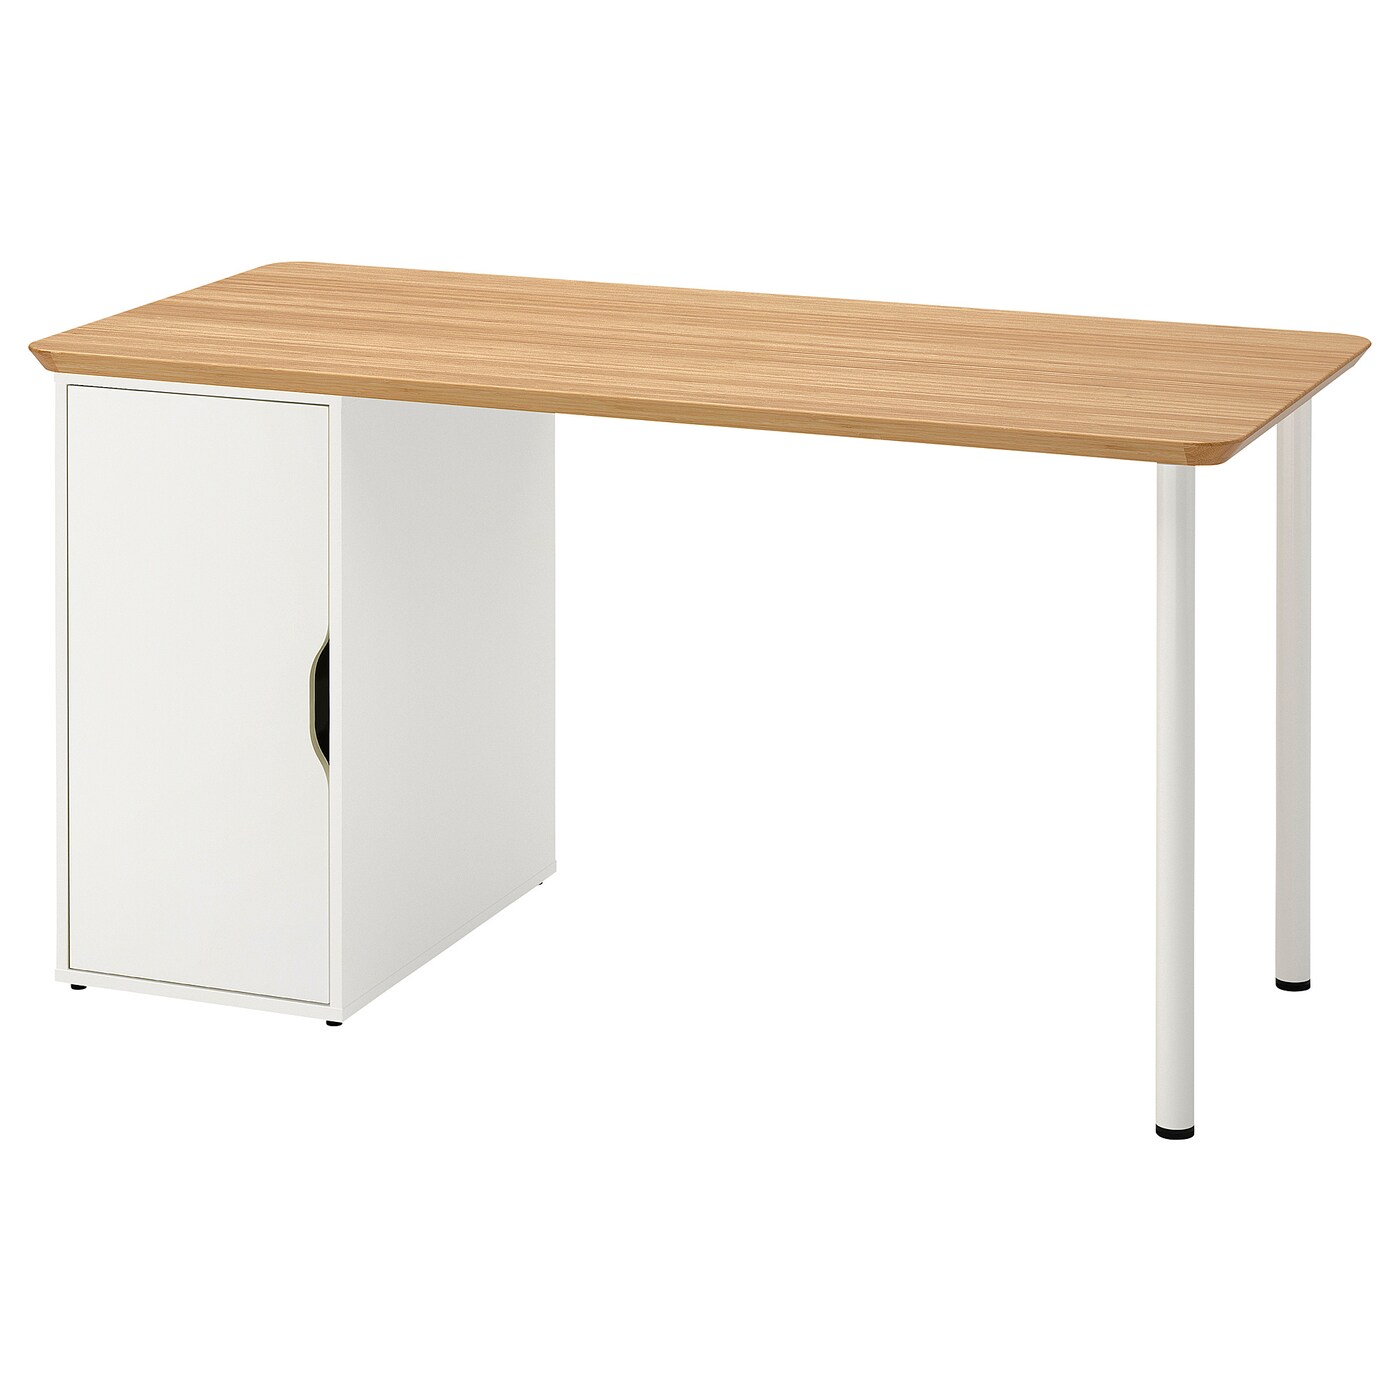 Письменный стол с ящиком - IKEA ANFALLARE/ALEX, 140x65 см, бамбук/белый, АНФАЛЛАРЕ/АЛЕКС ИКЕА